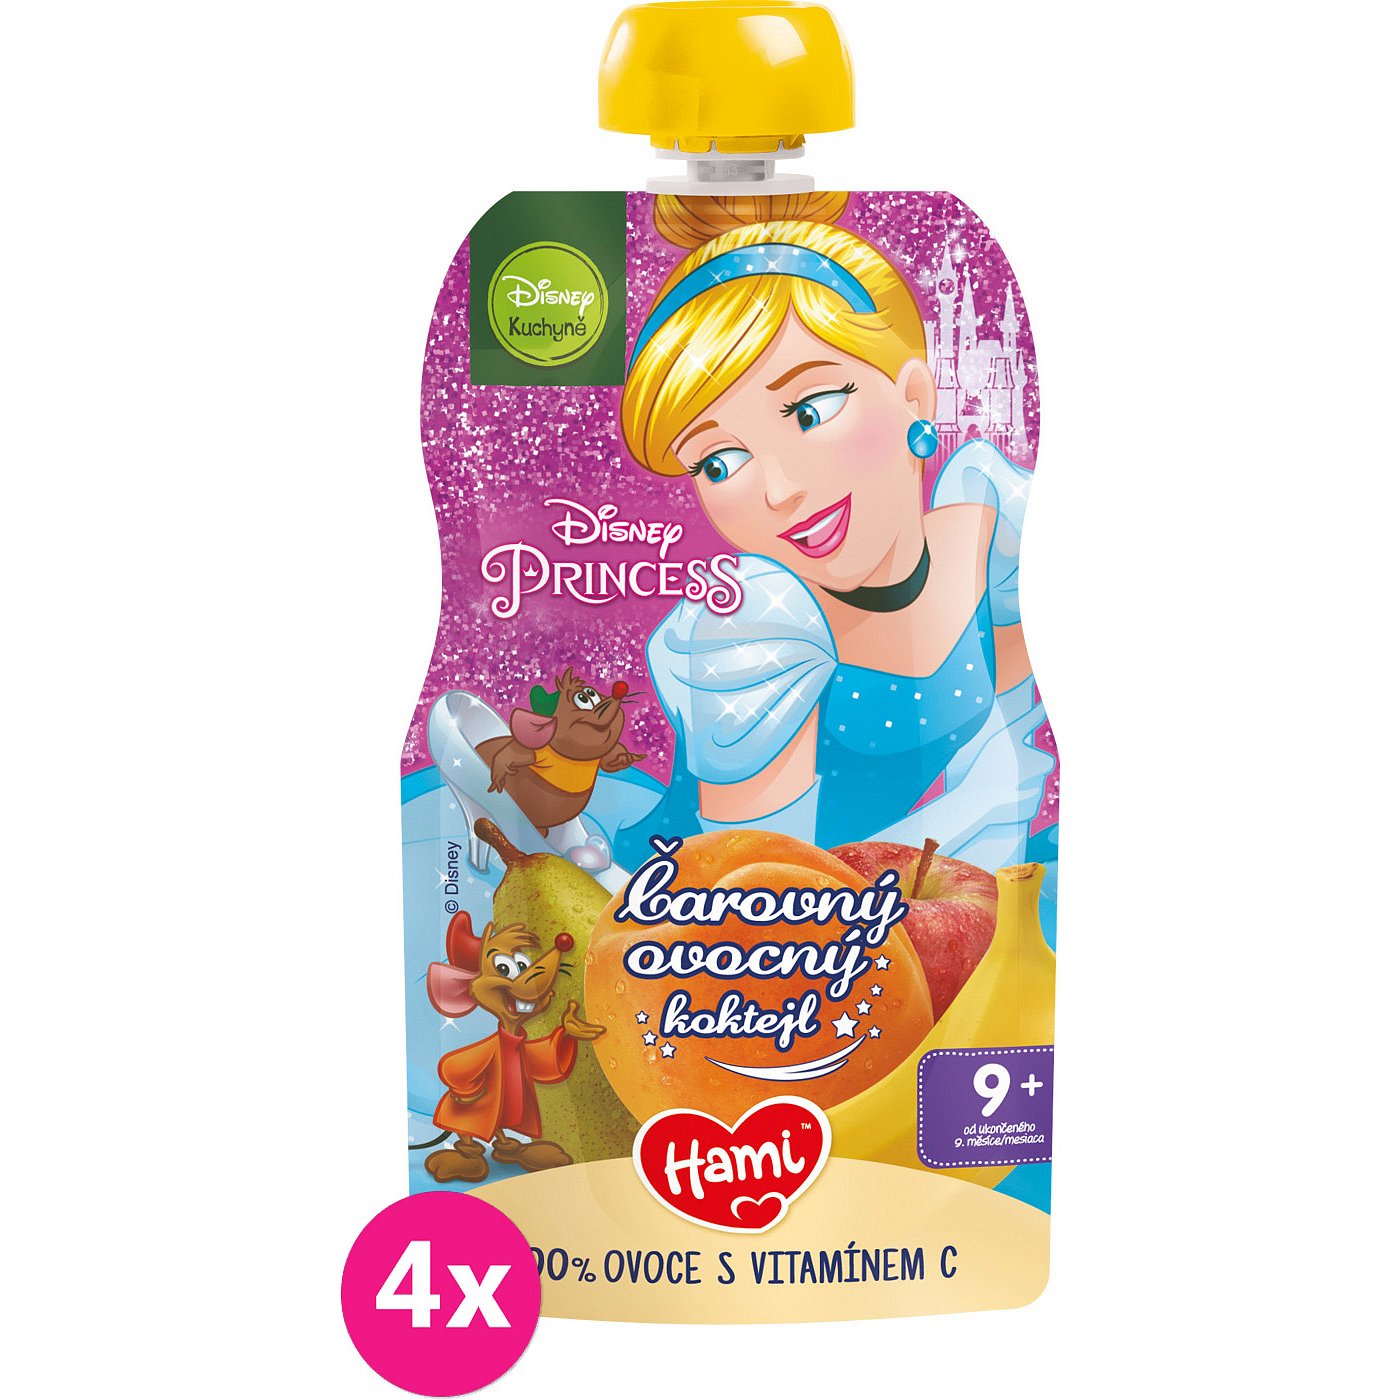 4x HAMI Disney Princess ovocná kapsička Kouzelný ovocný koktejl 110 g, 9+